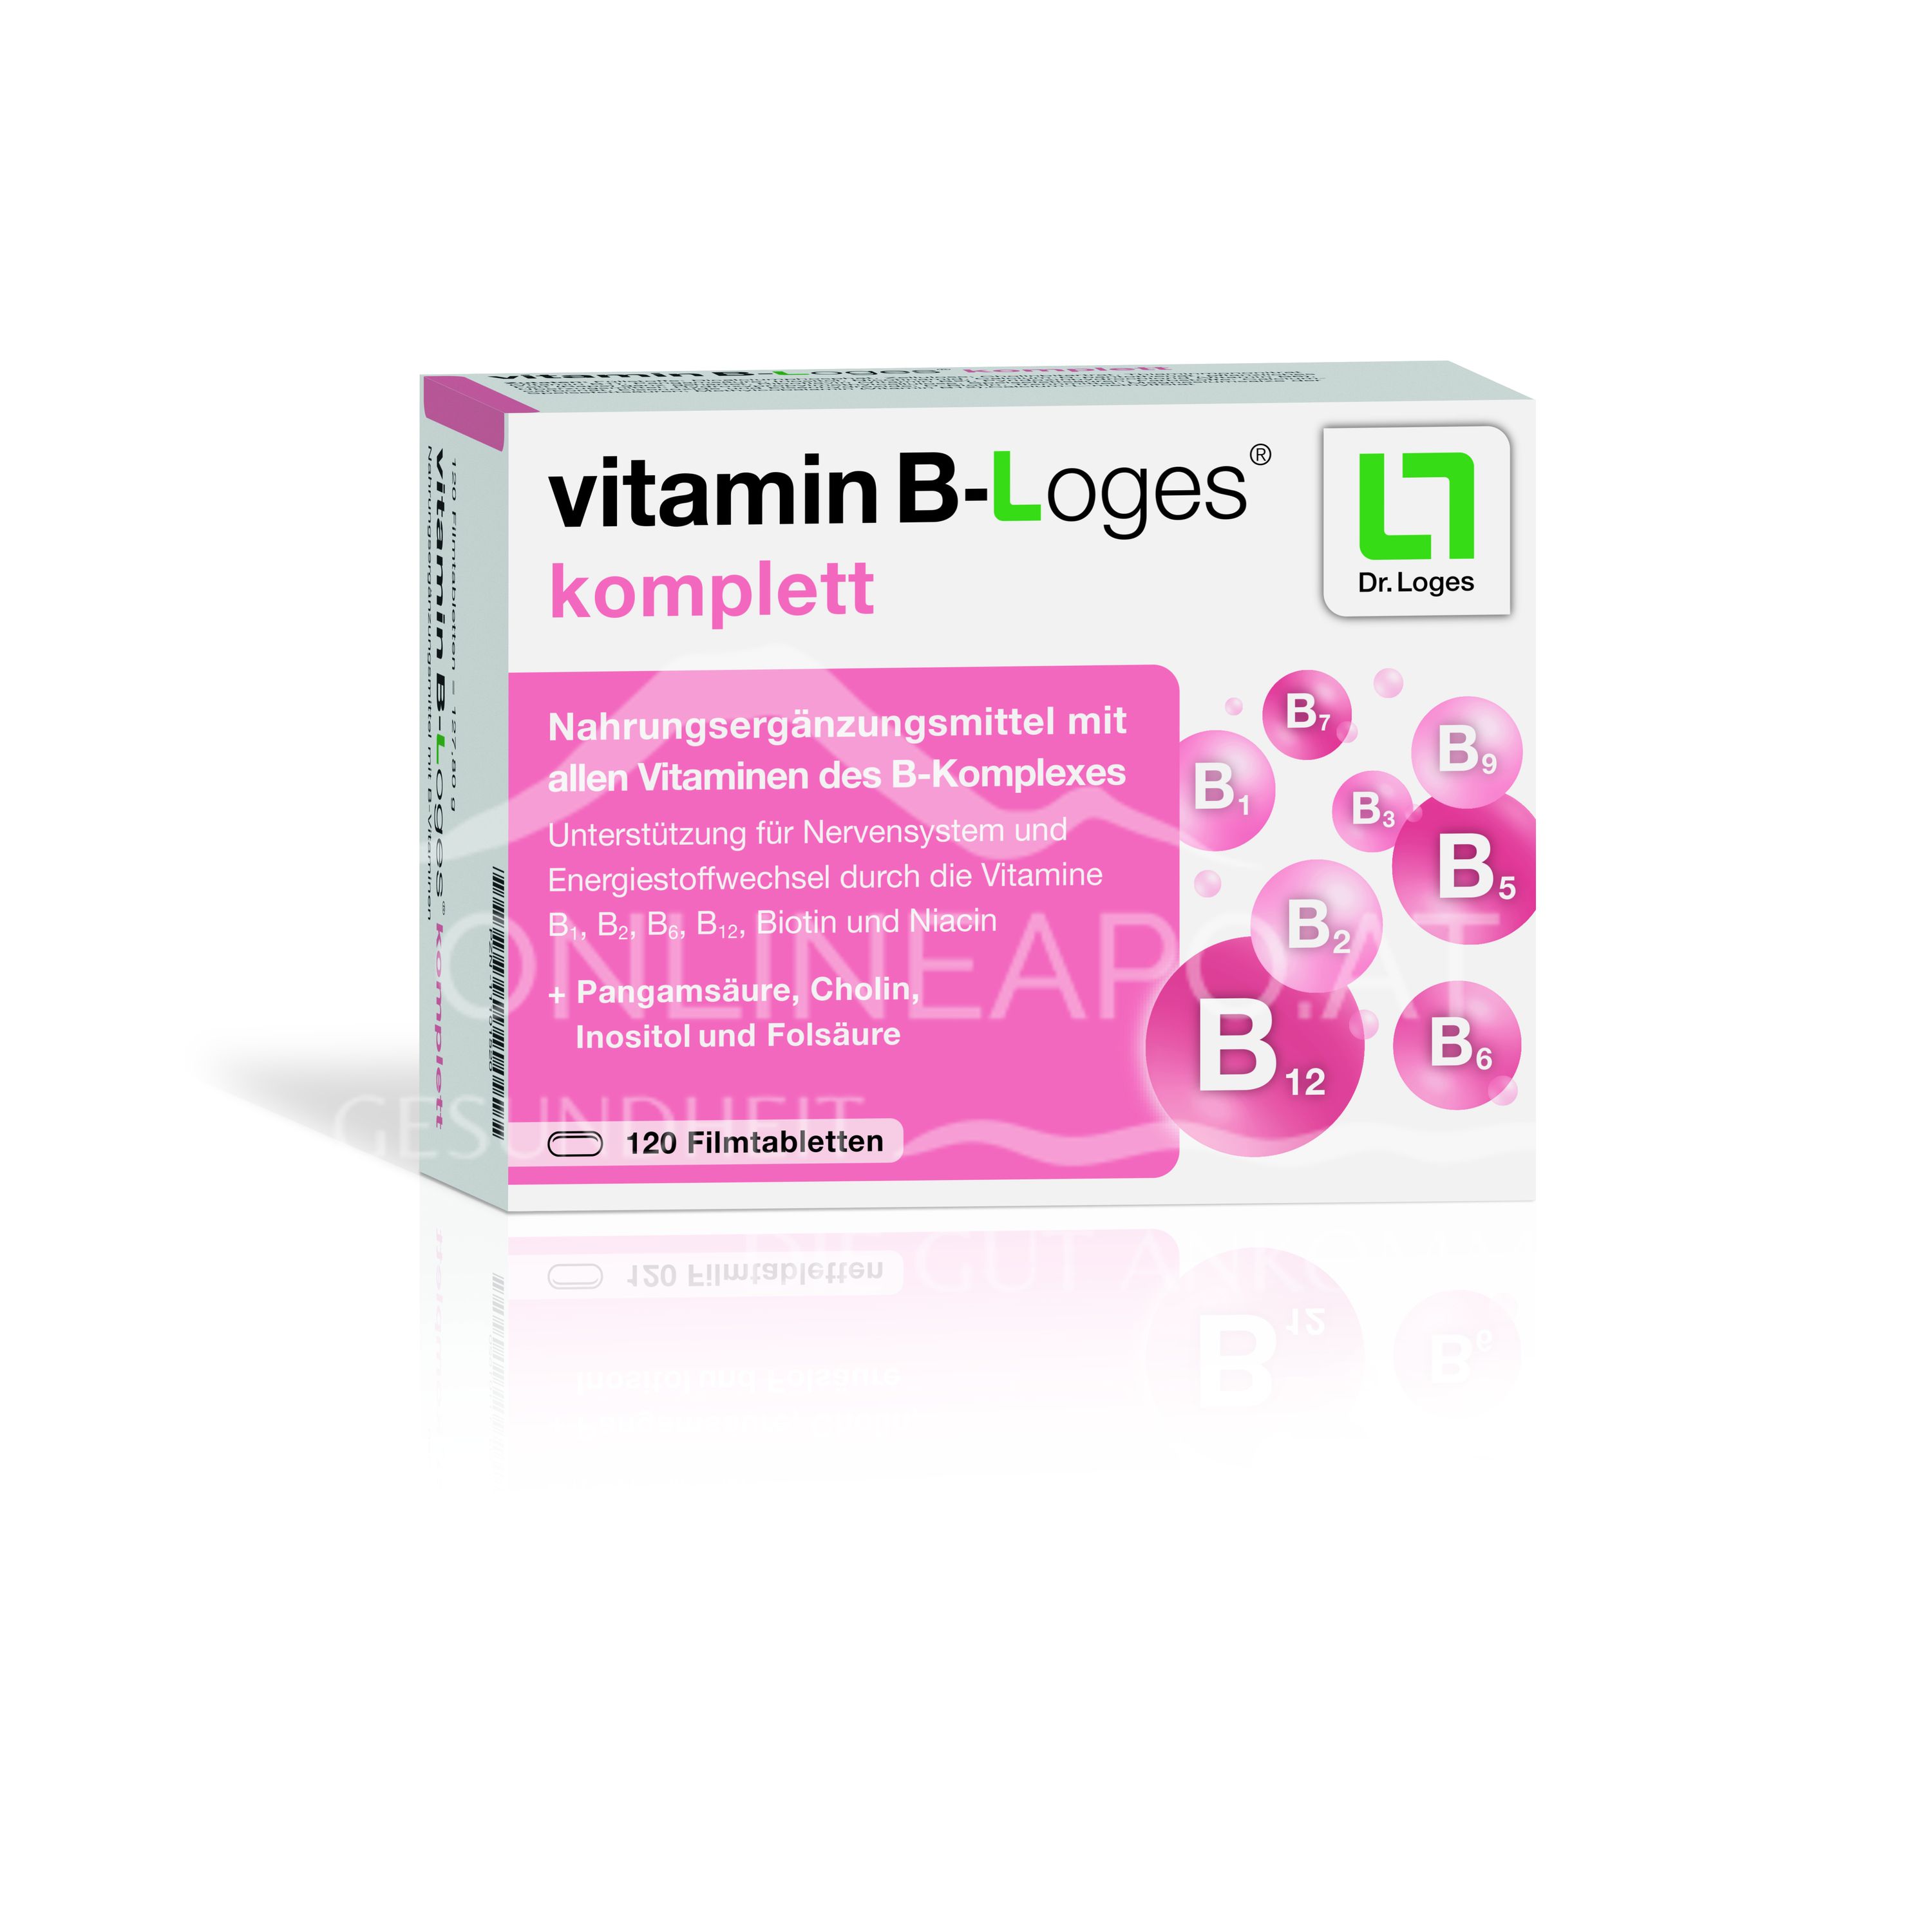 vitamin B-Loges® komplett Filmtabletten